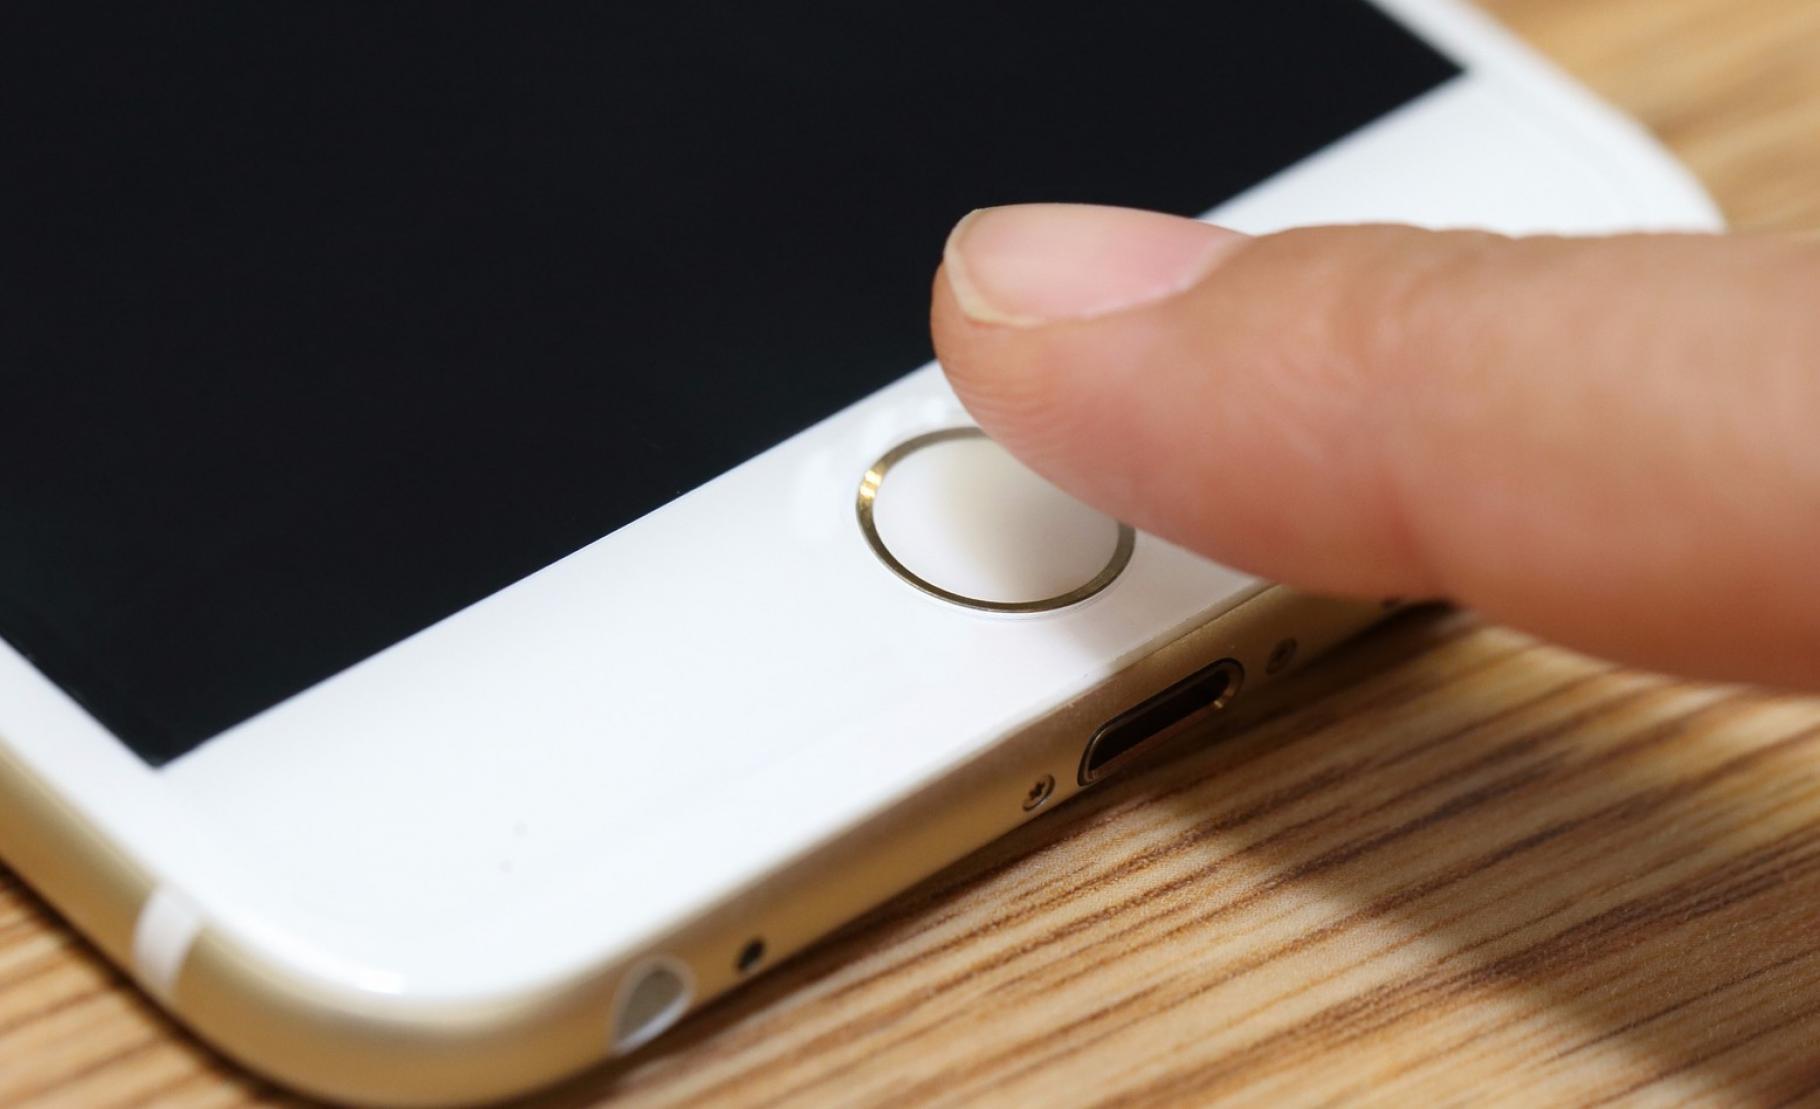 Les modèles récents d'iPhone et l'iPad sont équipés du lecteur d'empreintes digitales Touch ID. Apple aimerait exploiter ce capteur biométrique ainsi que d'autres, pour transformer le terminal en mouchard en cas de vol. © Charnsitr, Shutterstock 